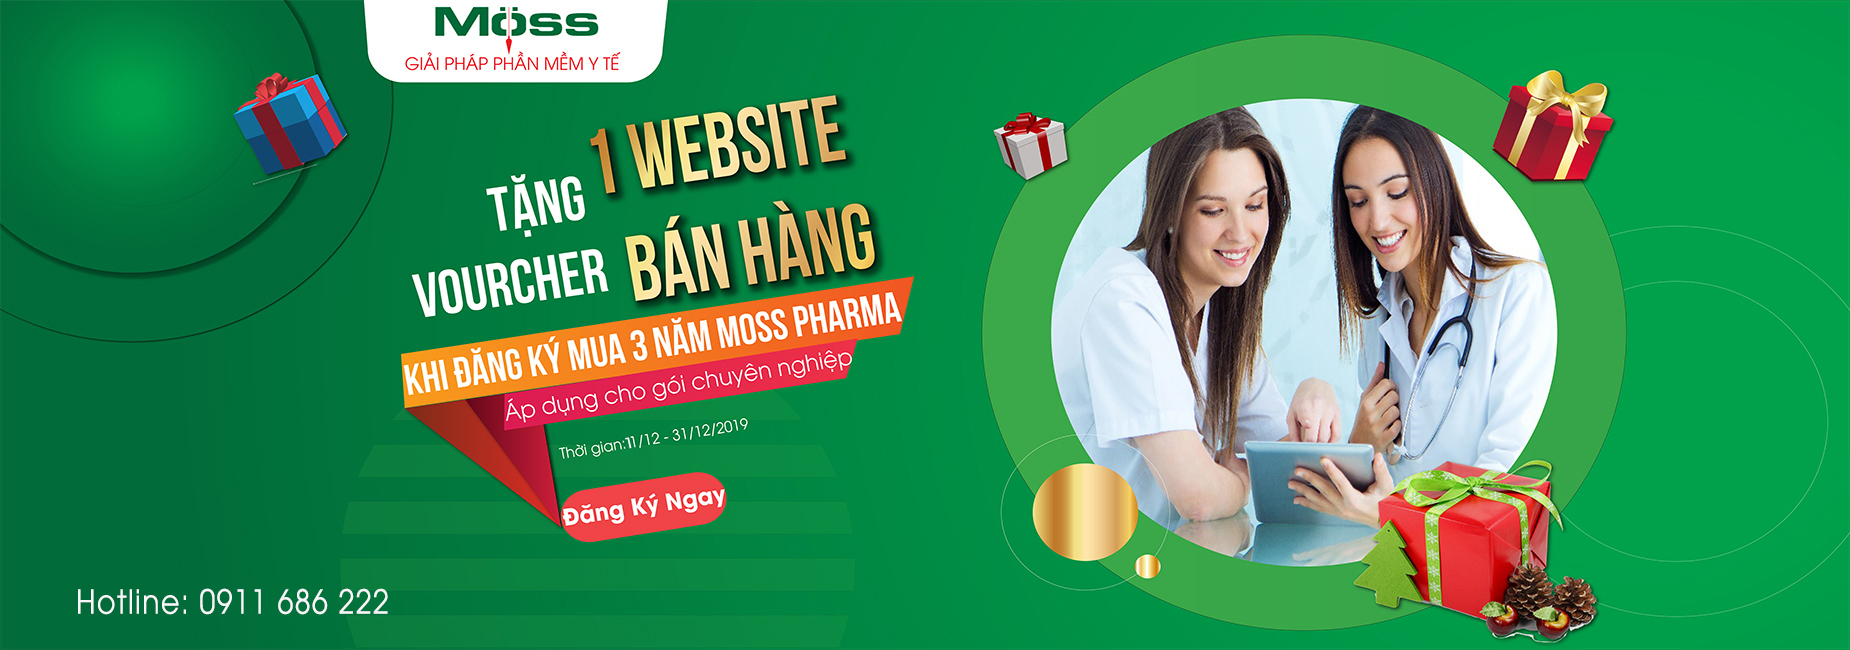 Mua Moss Pharma 3 năm tặng website bán hàng thương mại điện tử